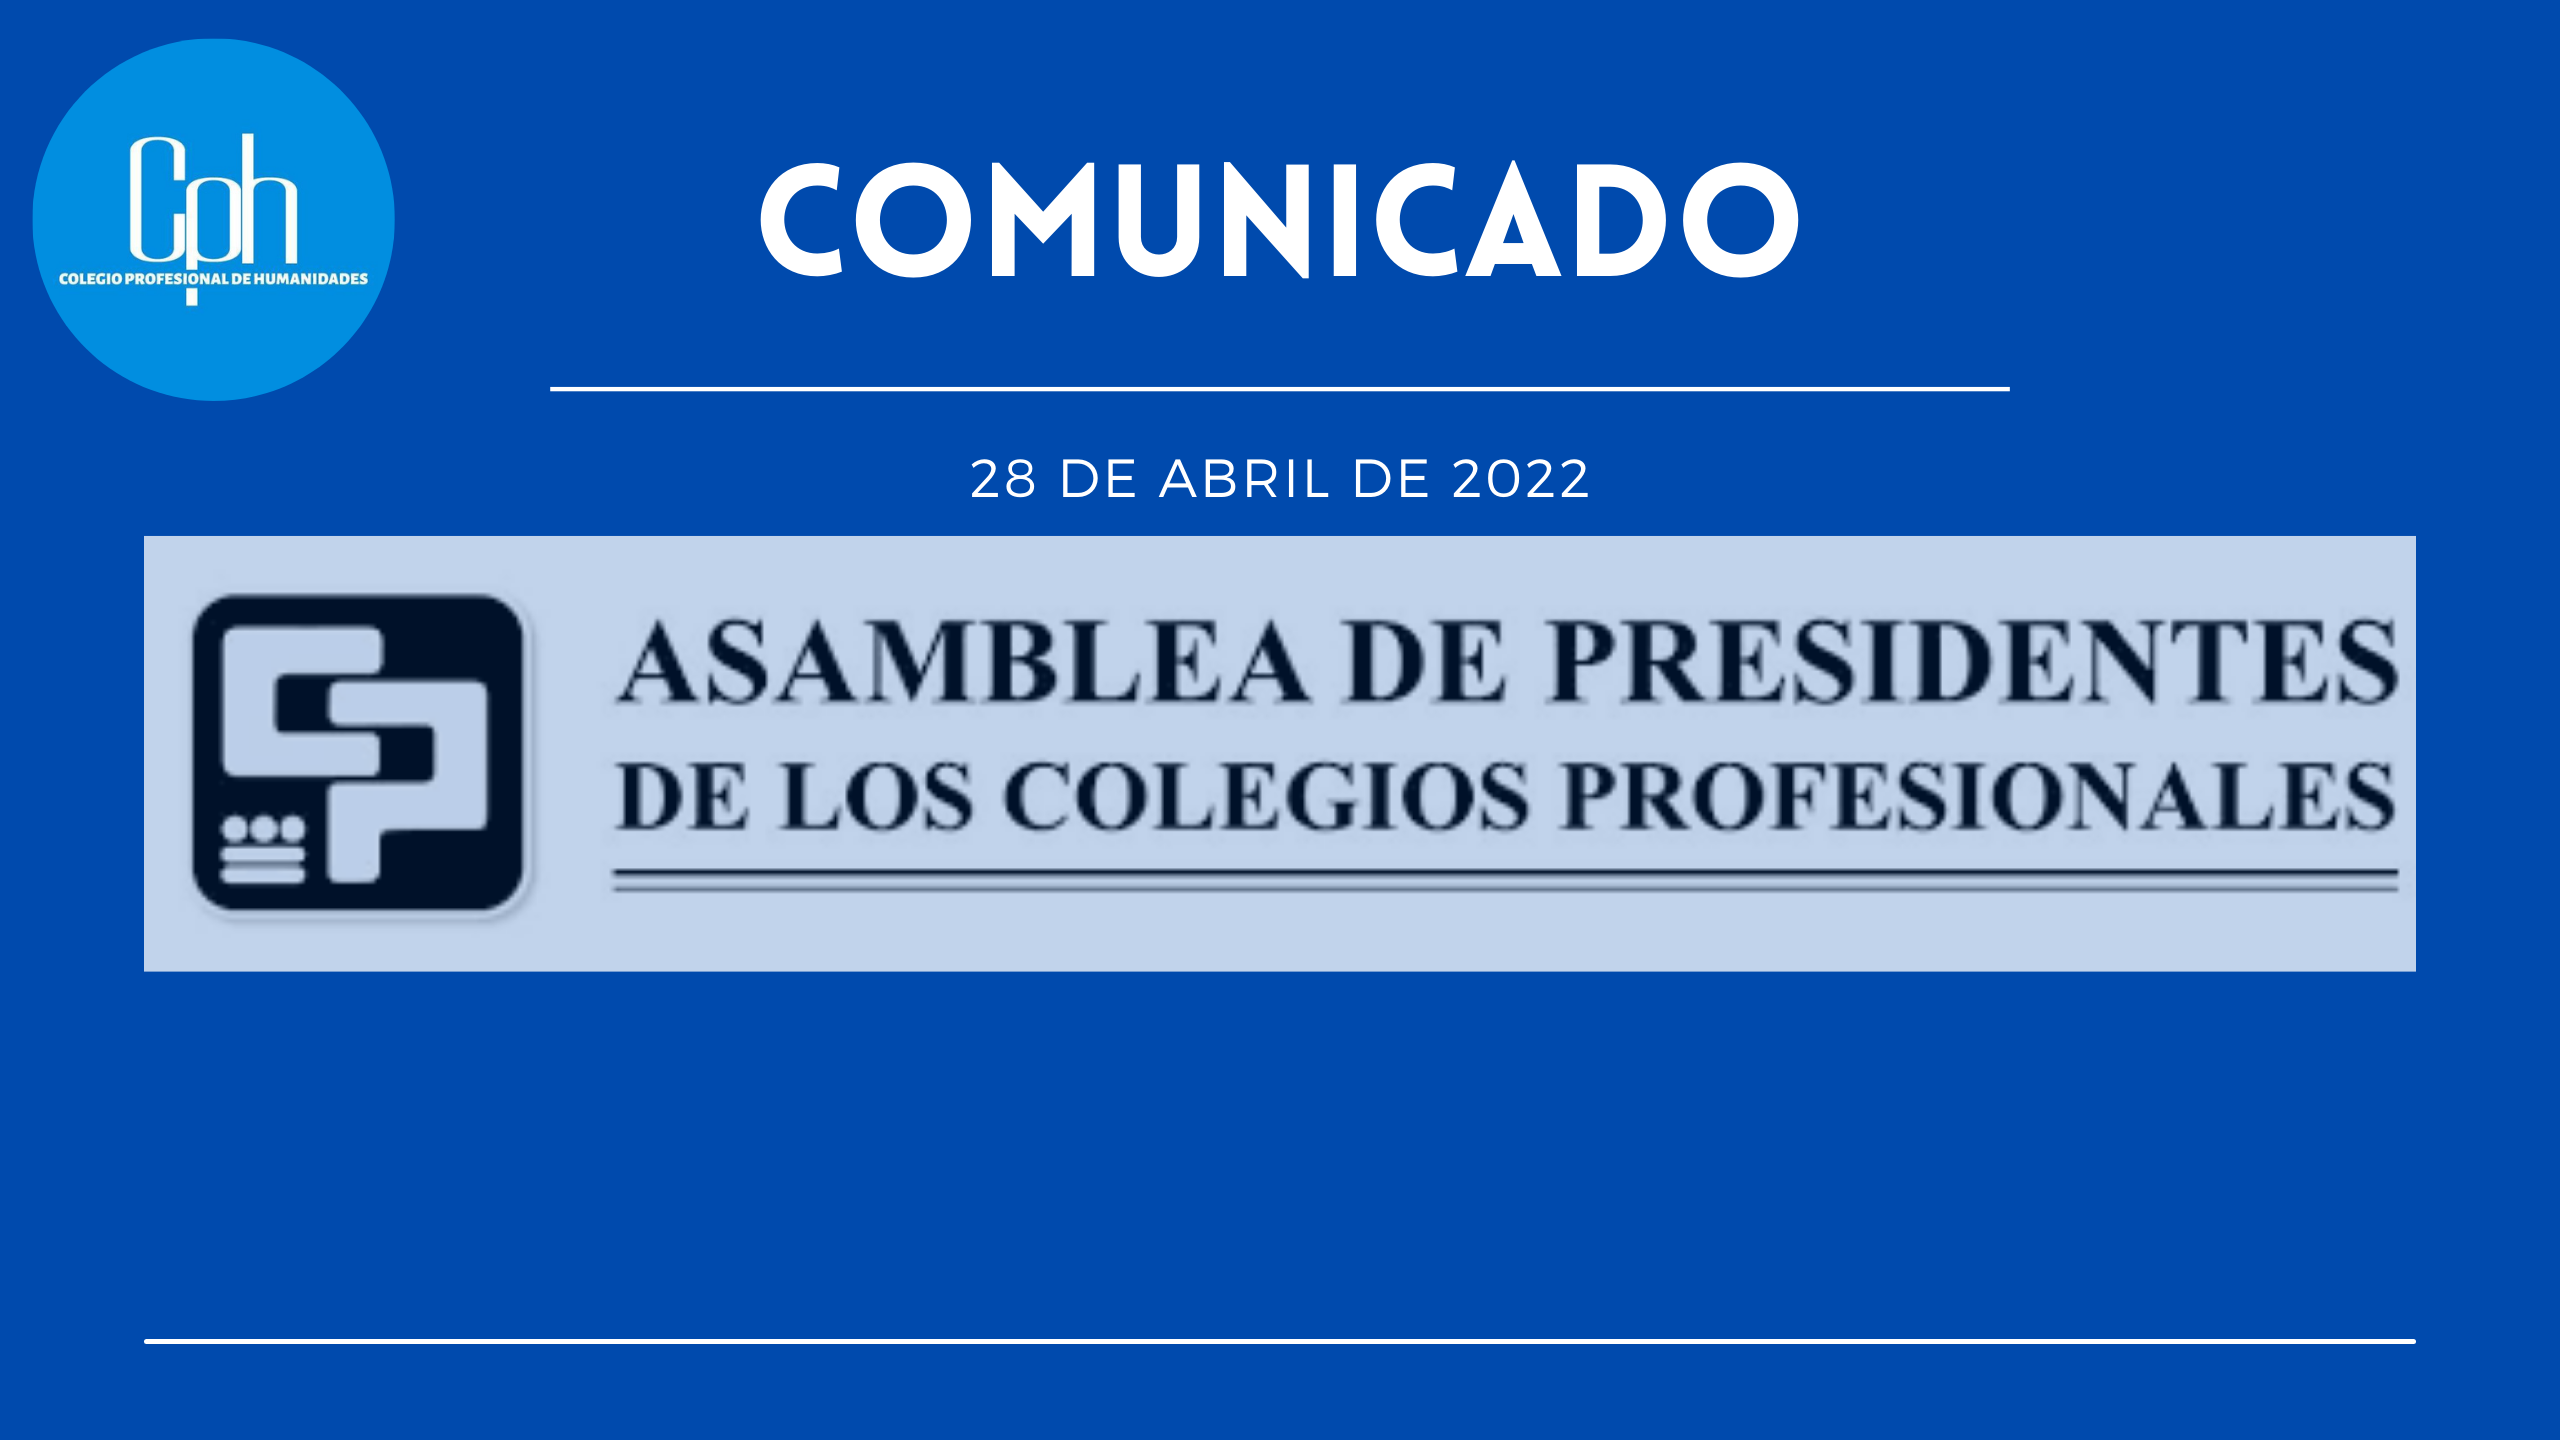 Comunicado Asamblea de Presidentes de los Colegios Profesionales